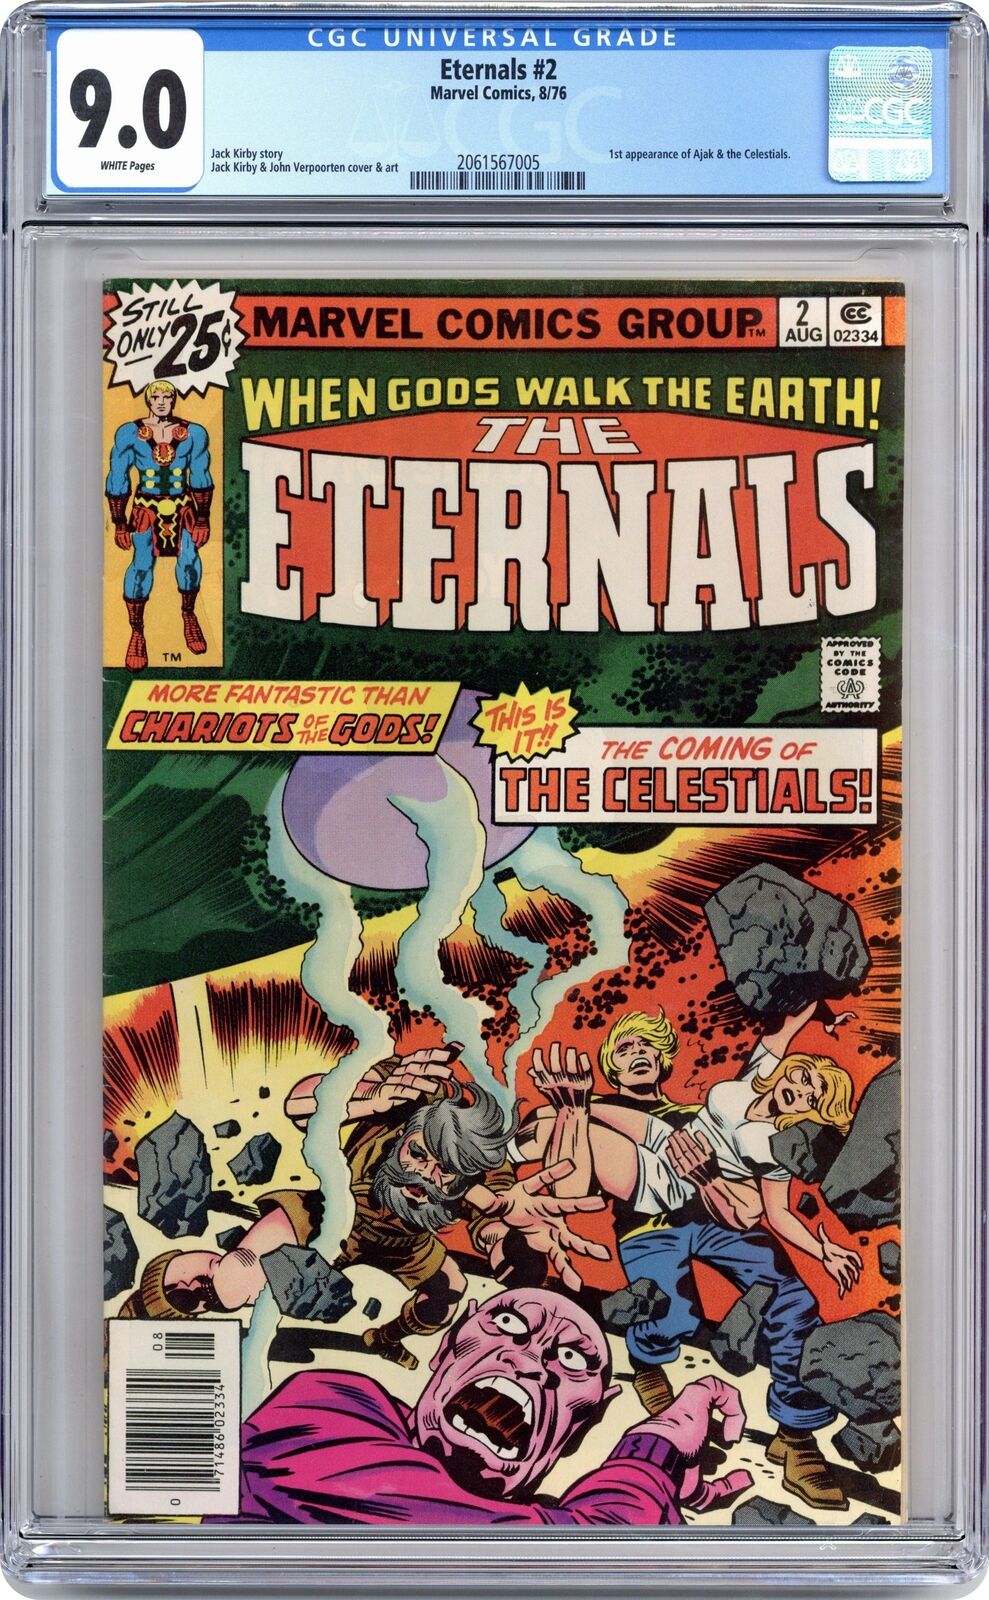 Eternals #2 CGC 9.0 1976 2061567005